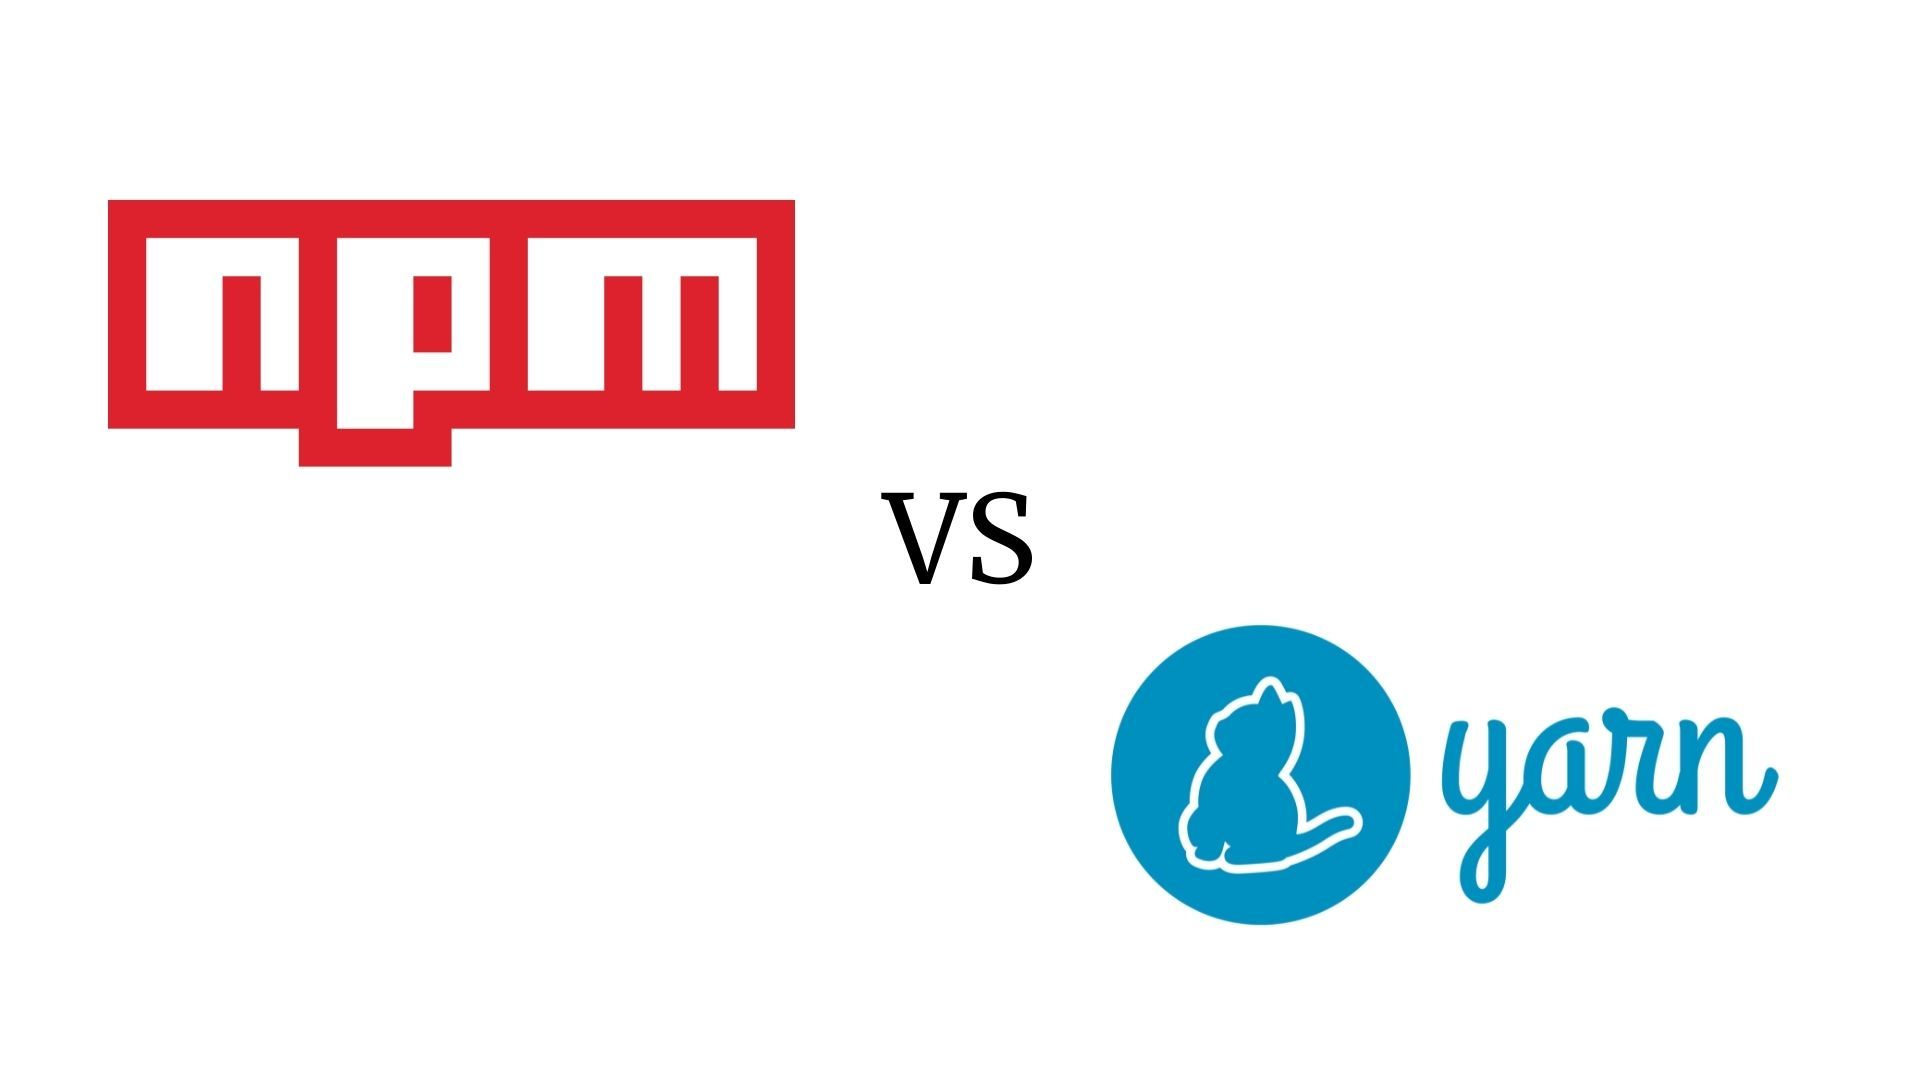 Image using a NPM logo versus Yarn logo.